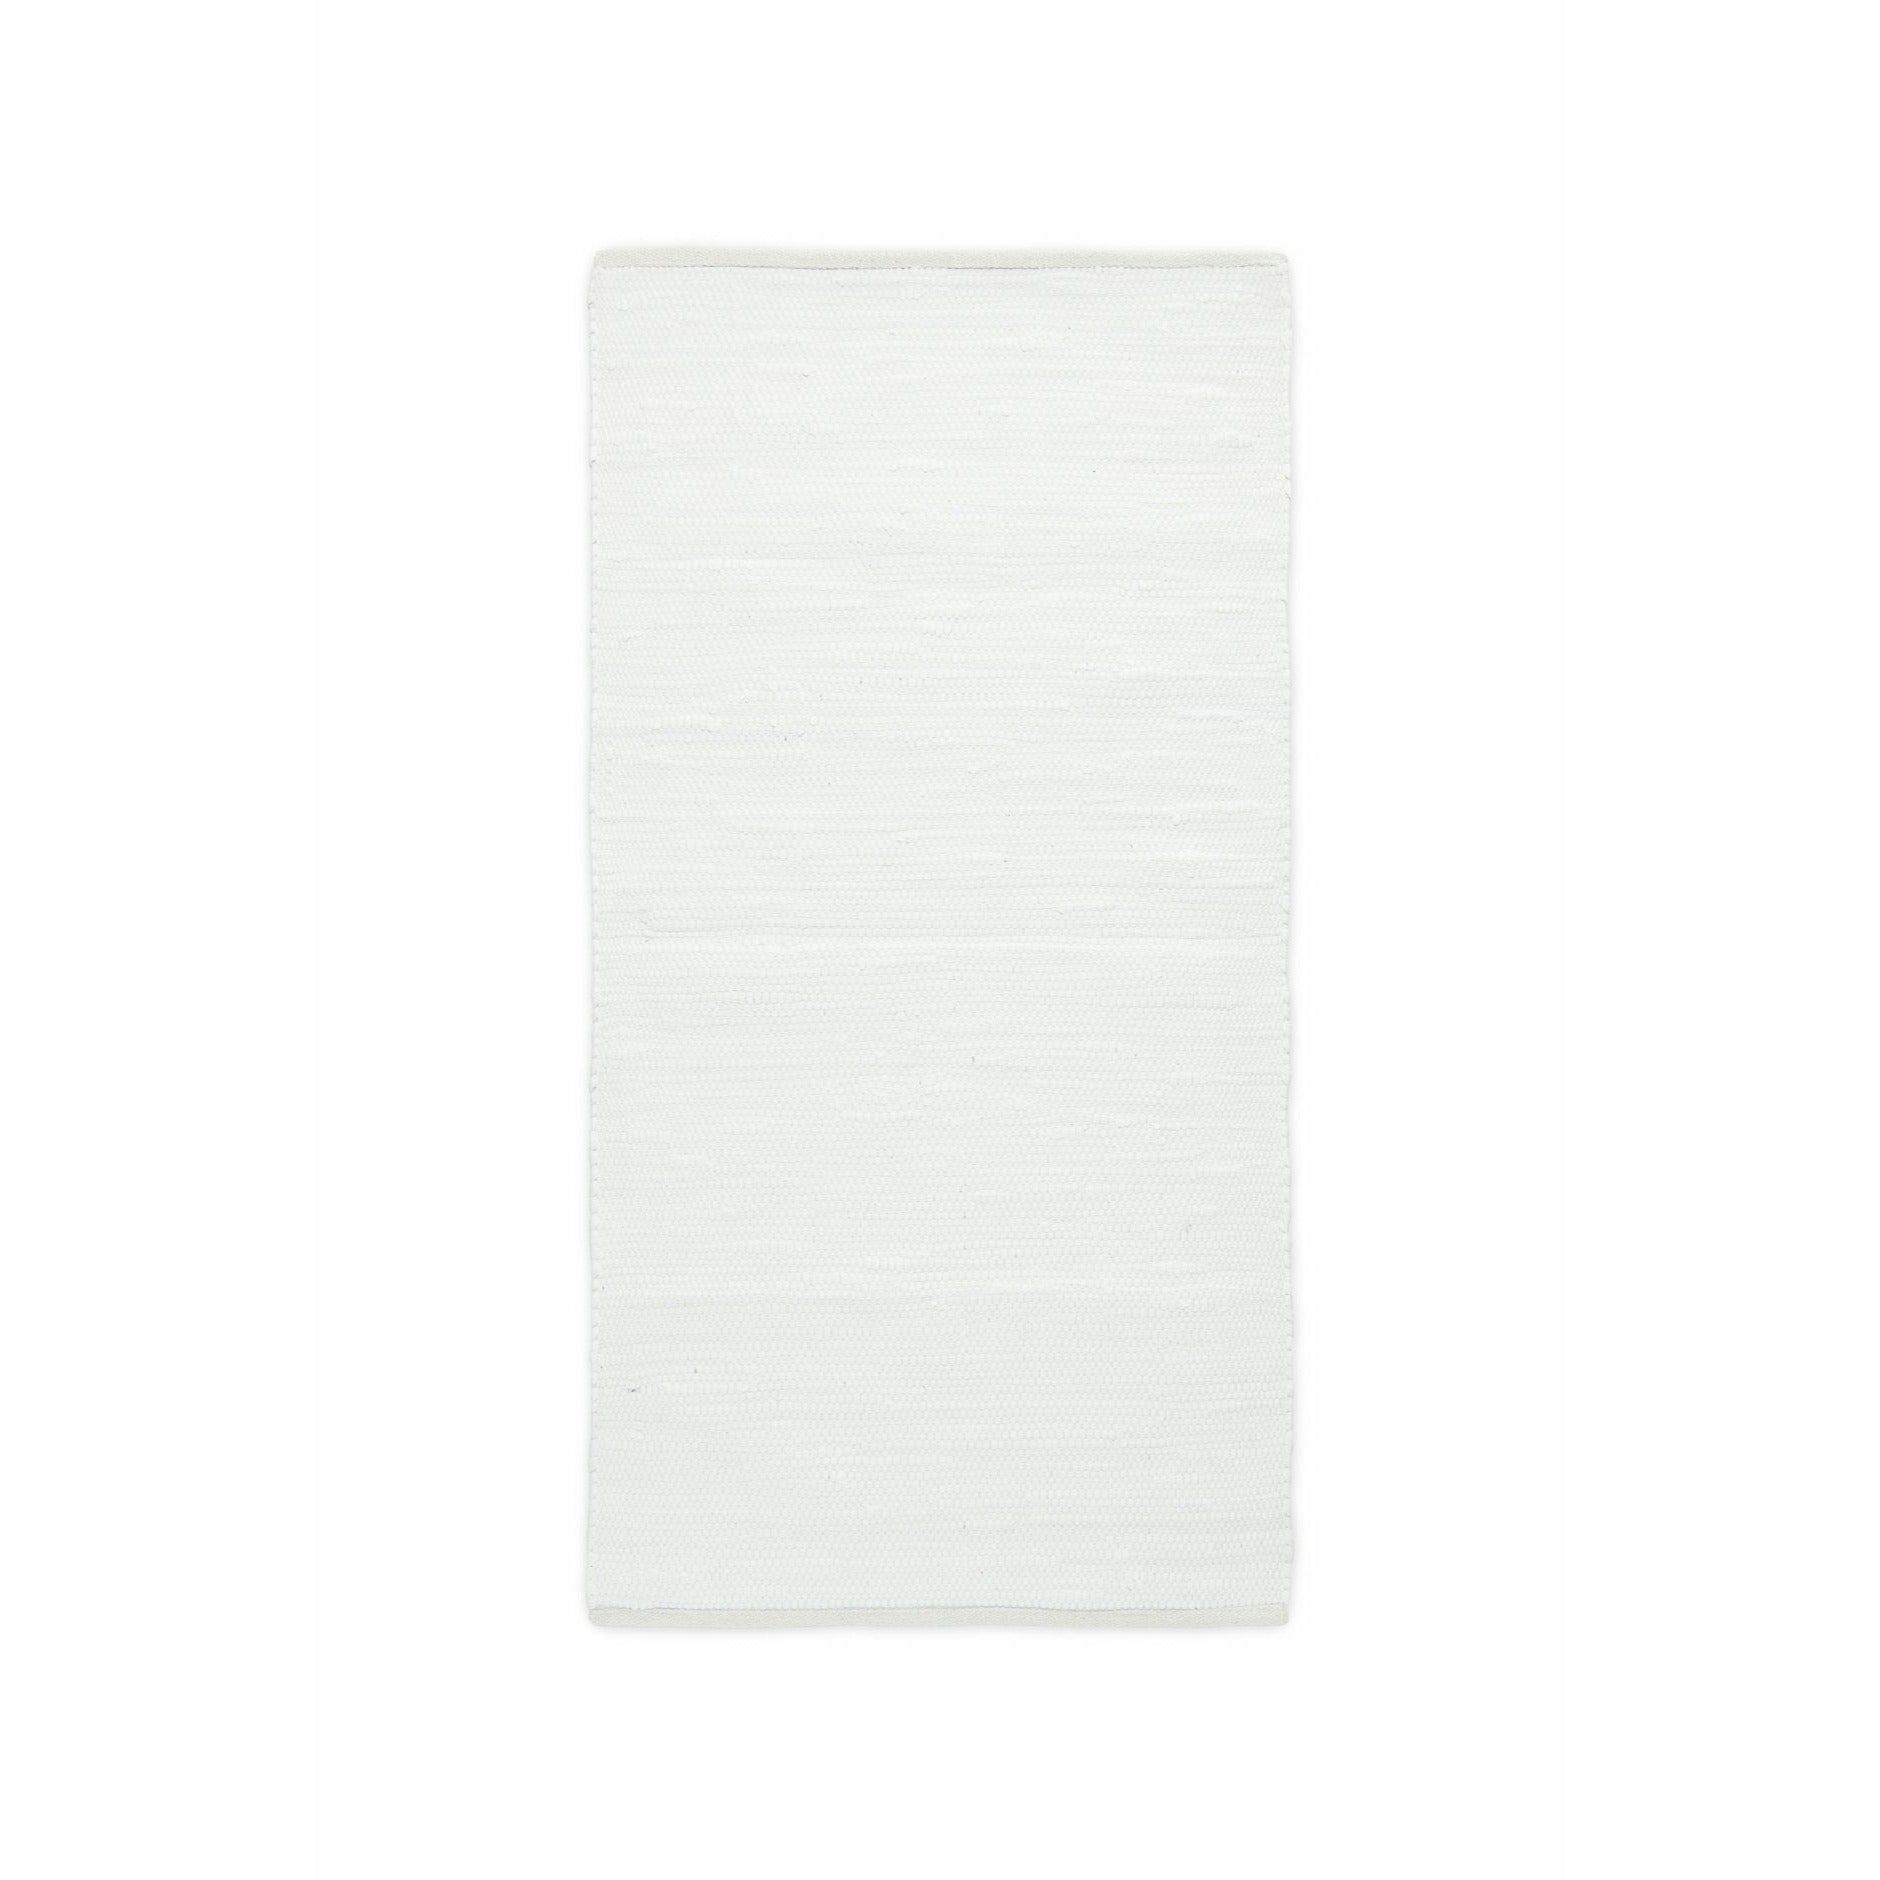 Rug Solid Katoen Tapsel Wit, 170 x 240 cm